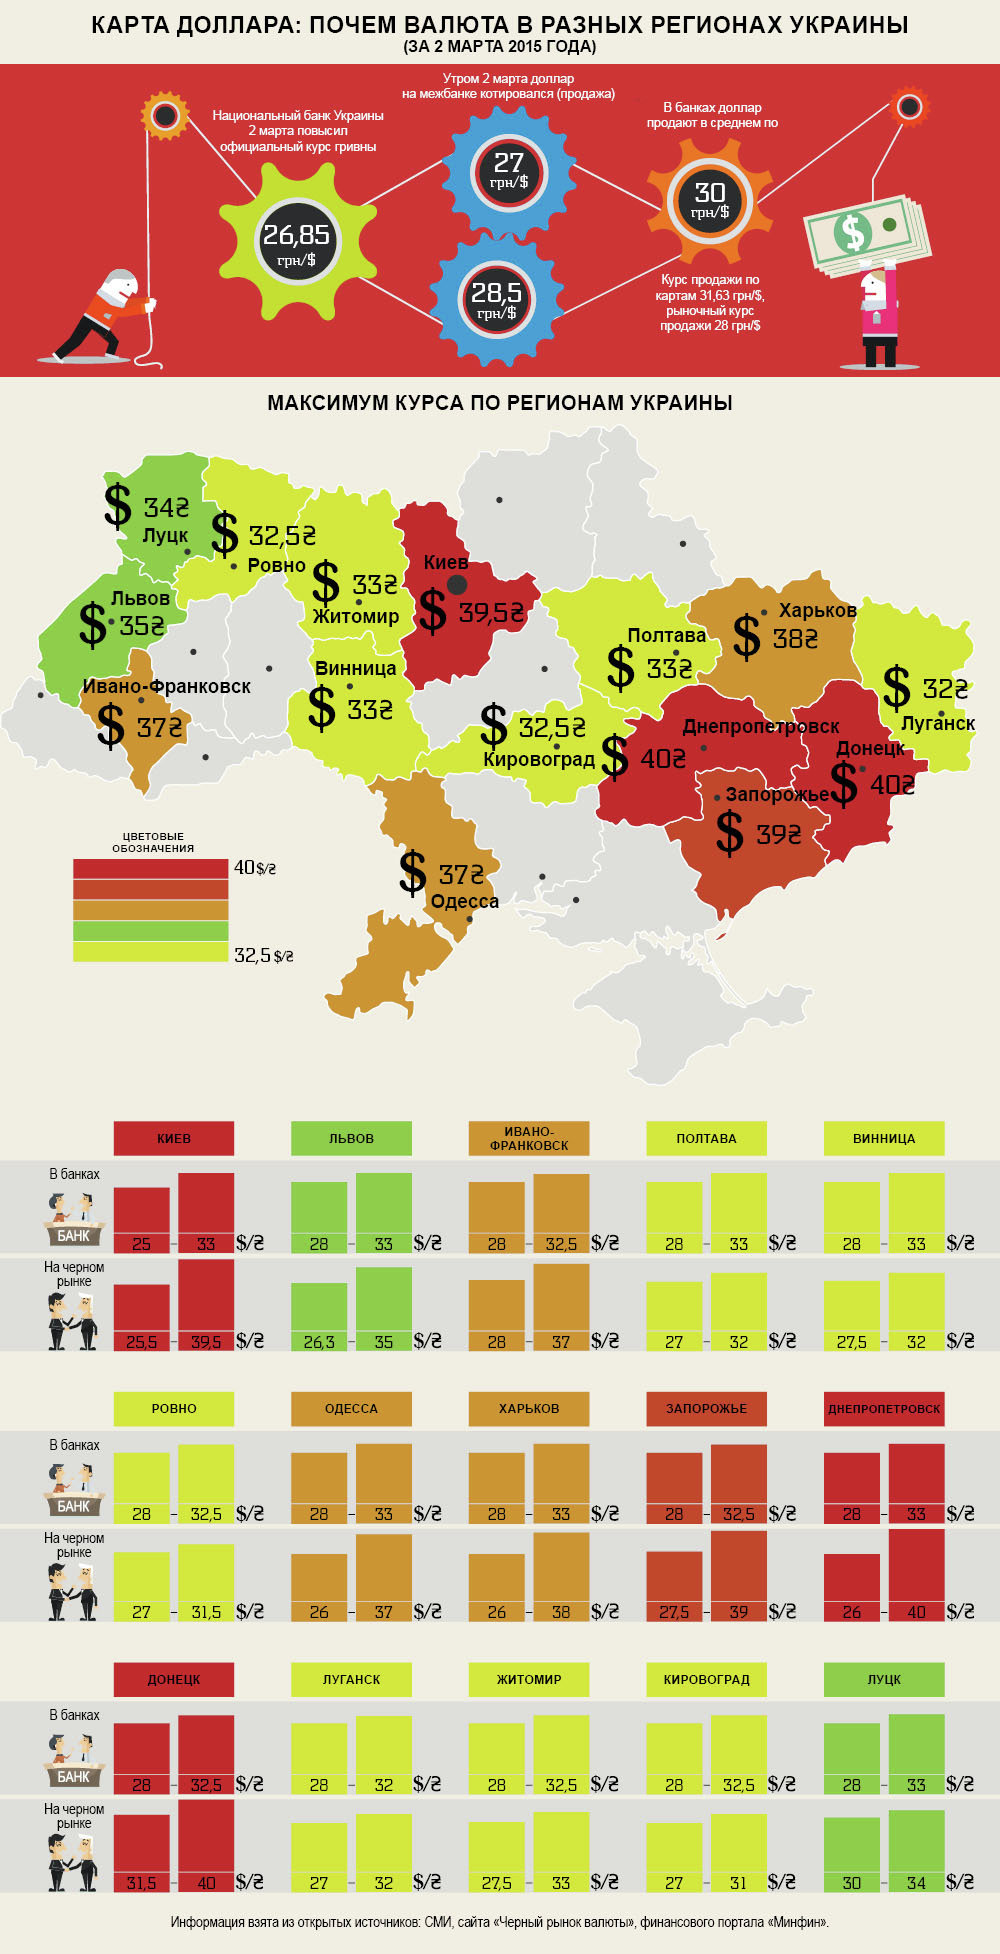 Почем валюта в разных регионах страны. Инфографика